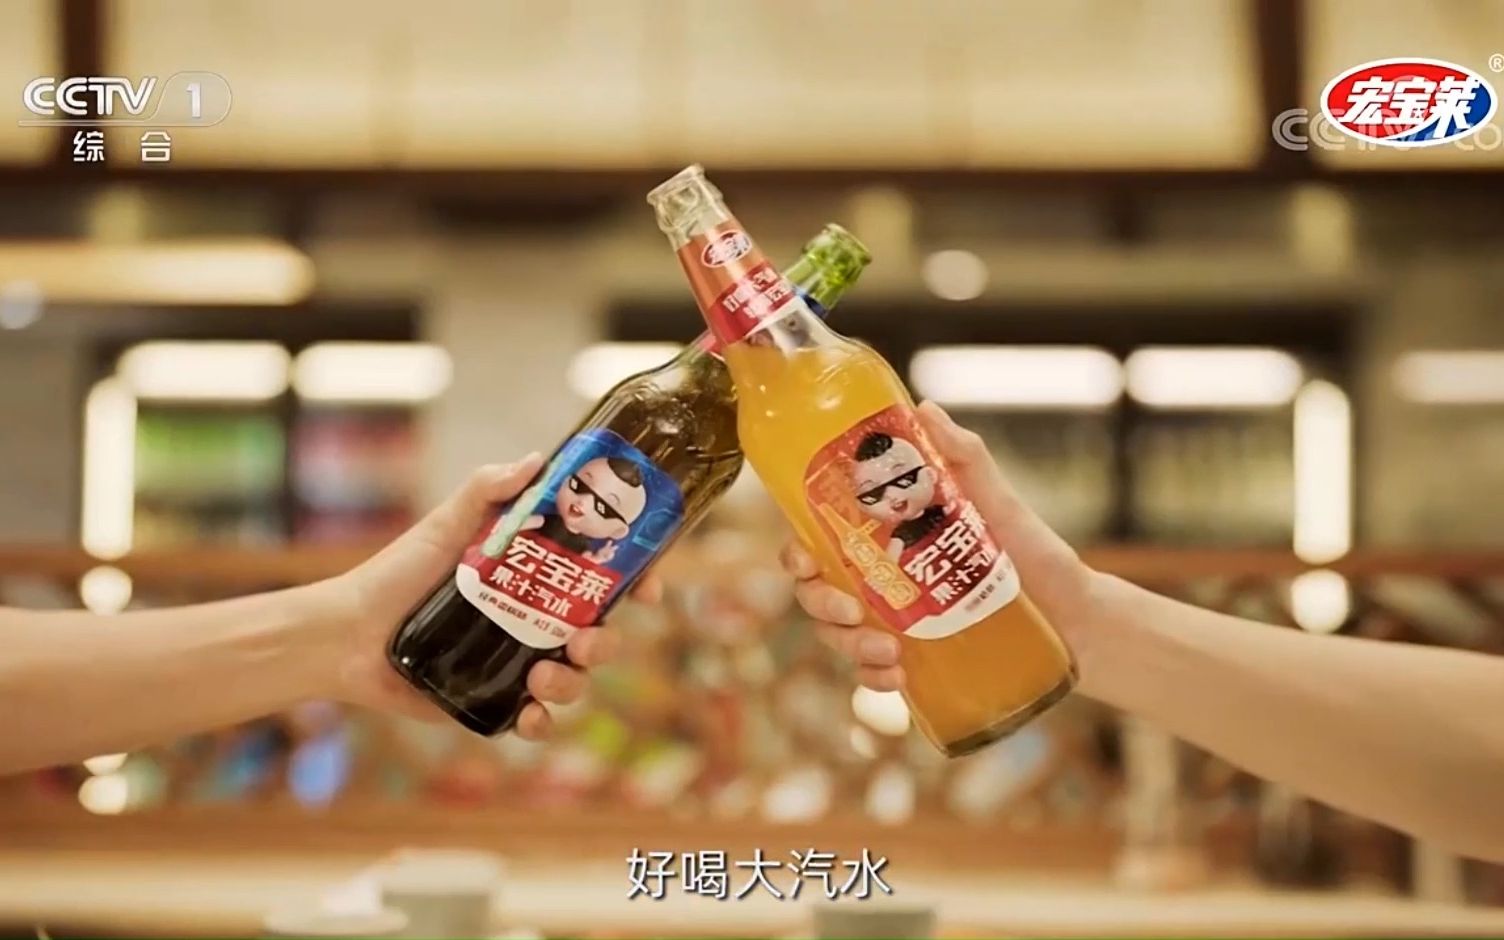 上央视广告的新品饮料图片